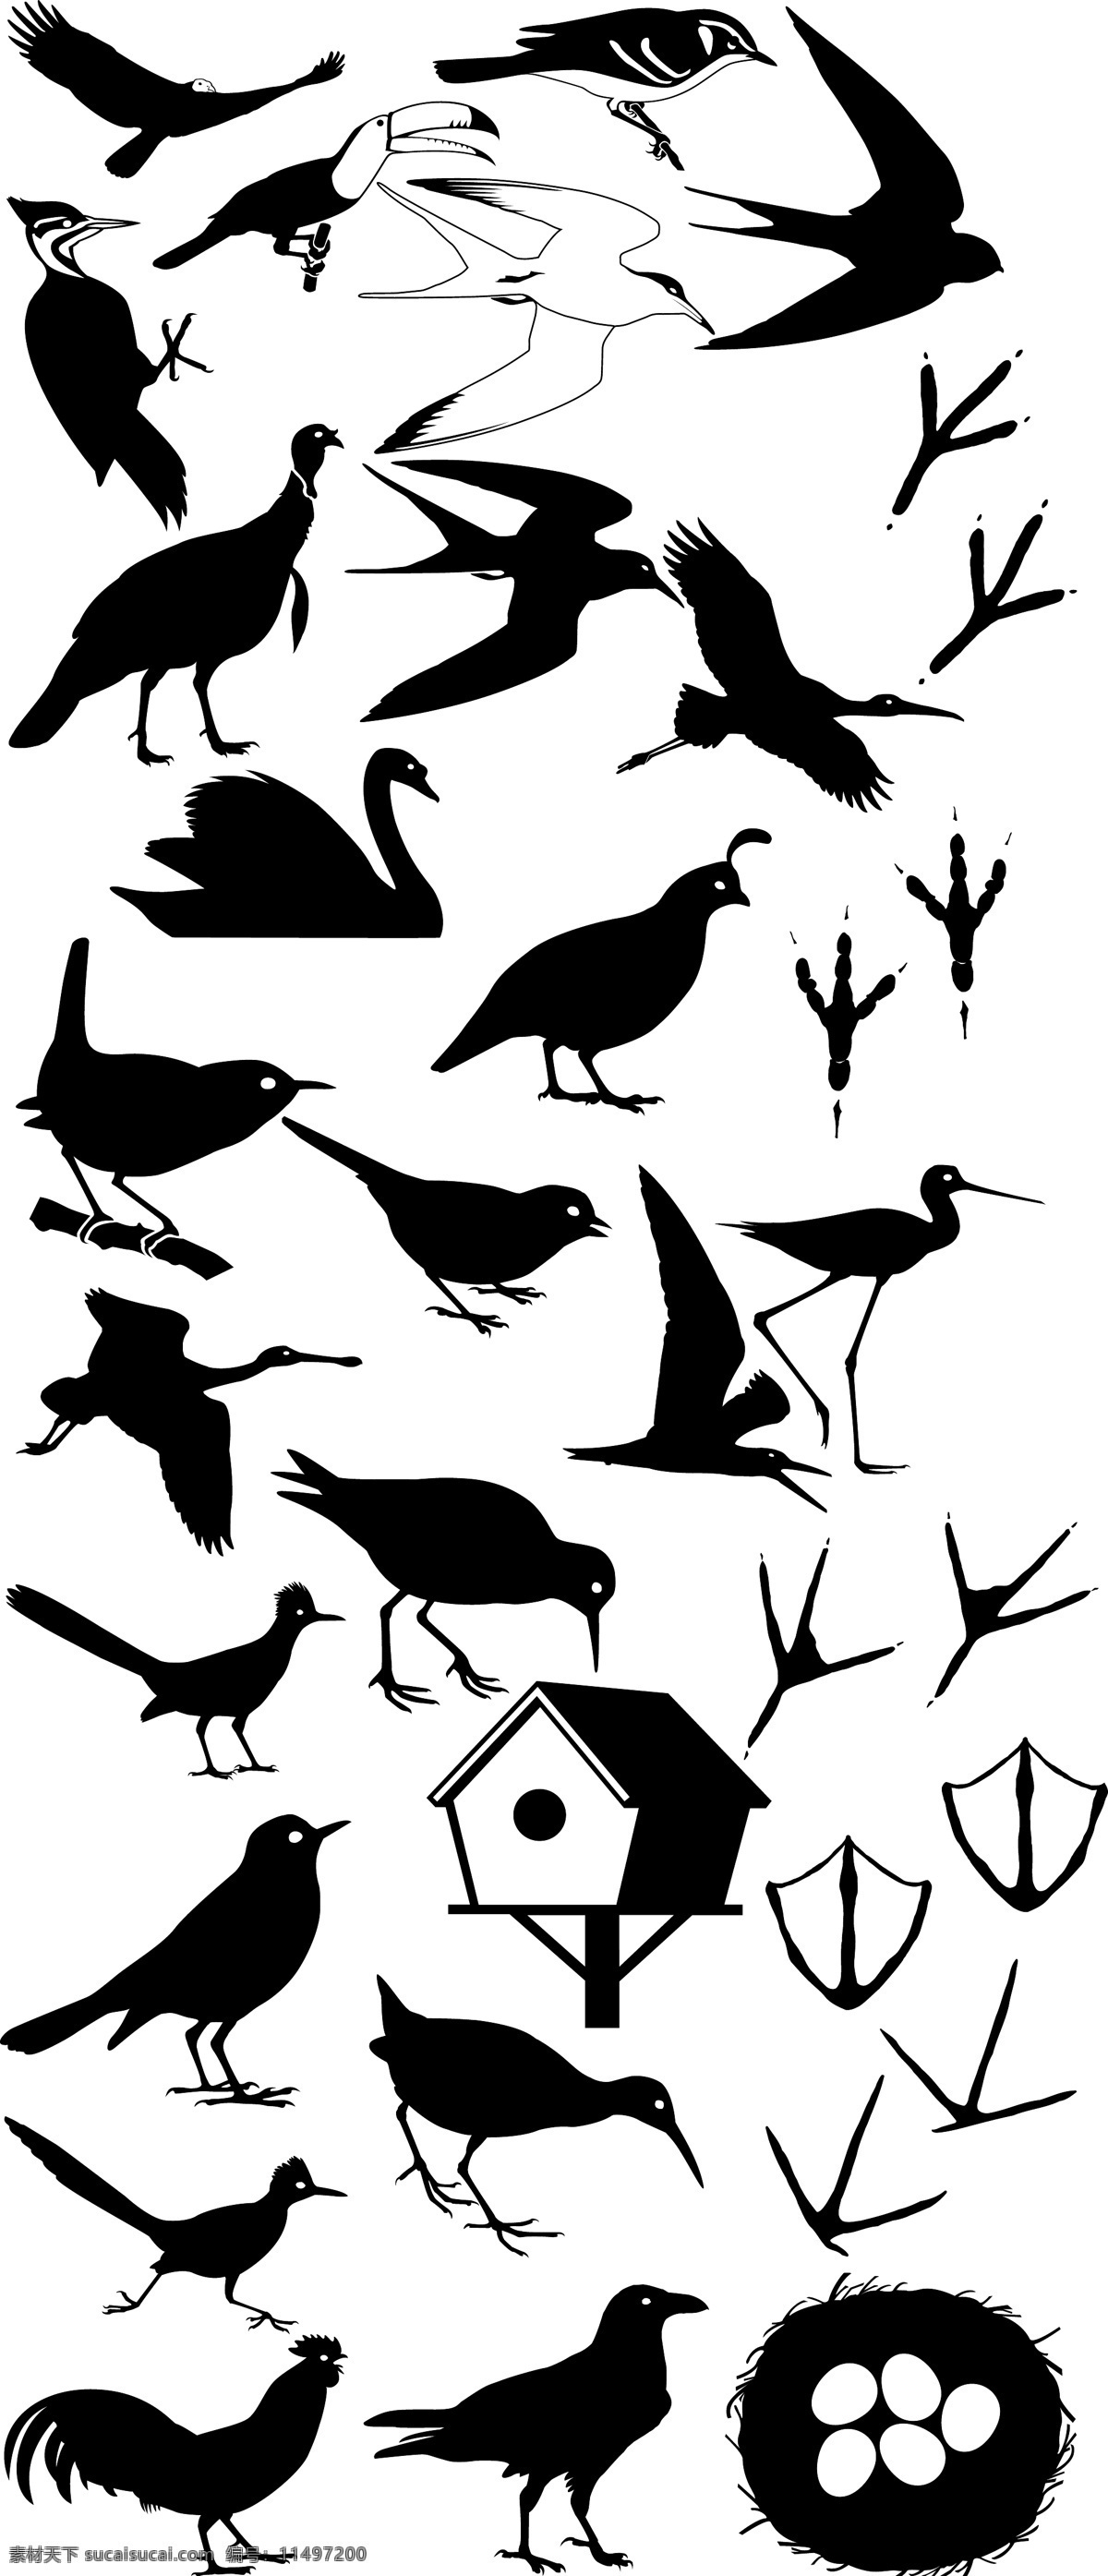 鸟类剪影 鸟类矢量图 剪影 墨版 鸟 八哥 天鹅 燕子 鸟蛋 爪 脚印 鸟屋 乌鸦 生物世界 鸟类